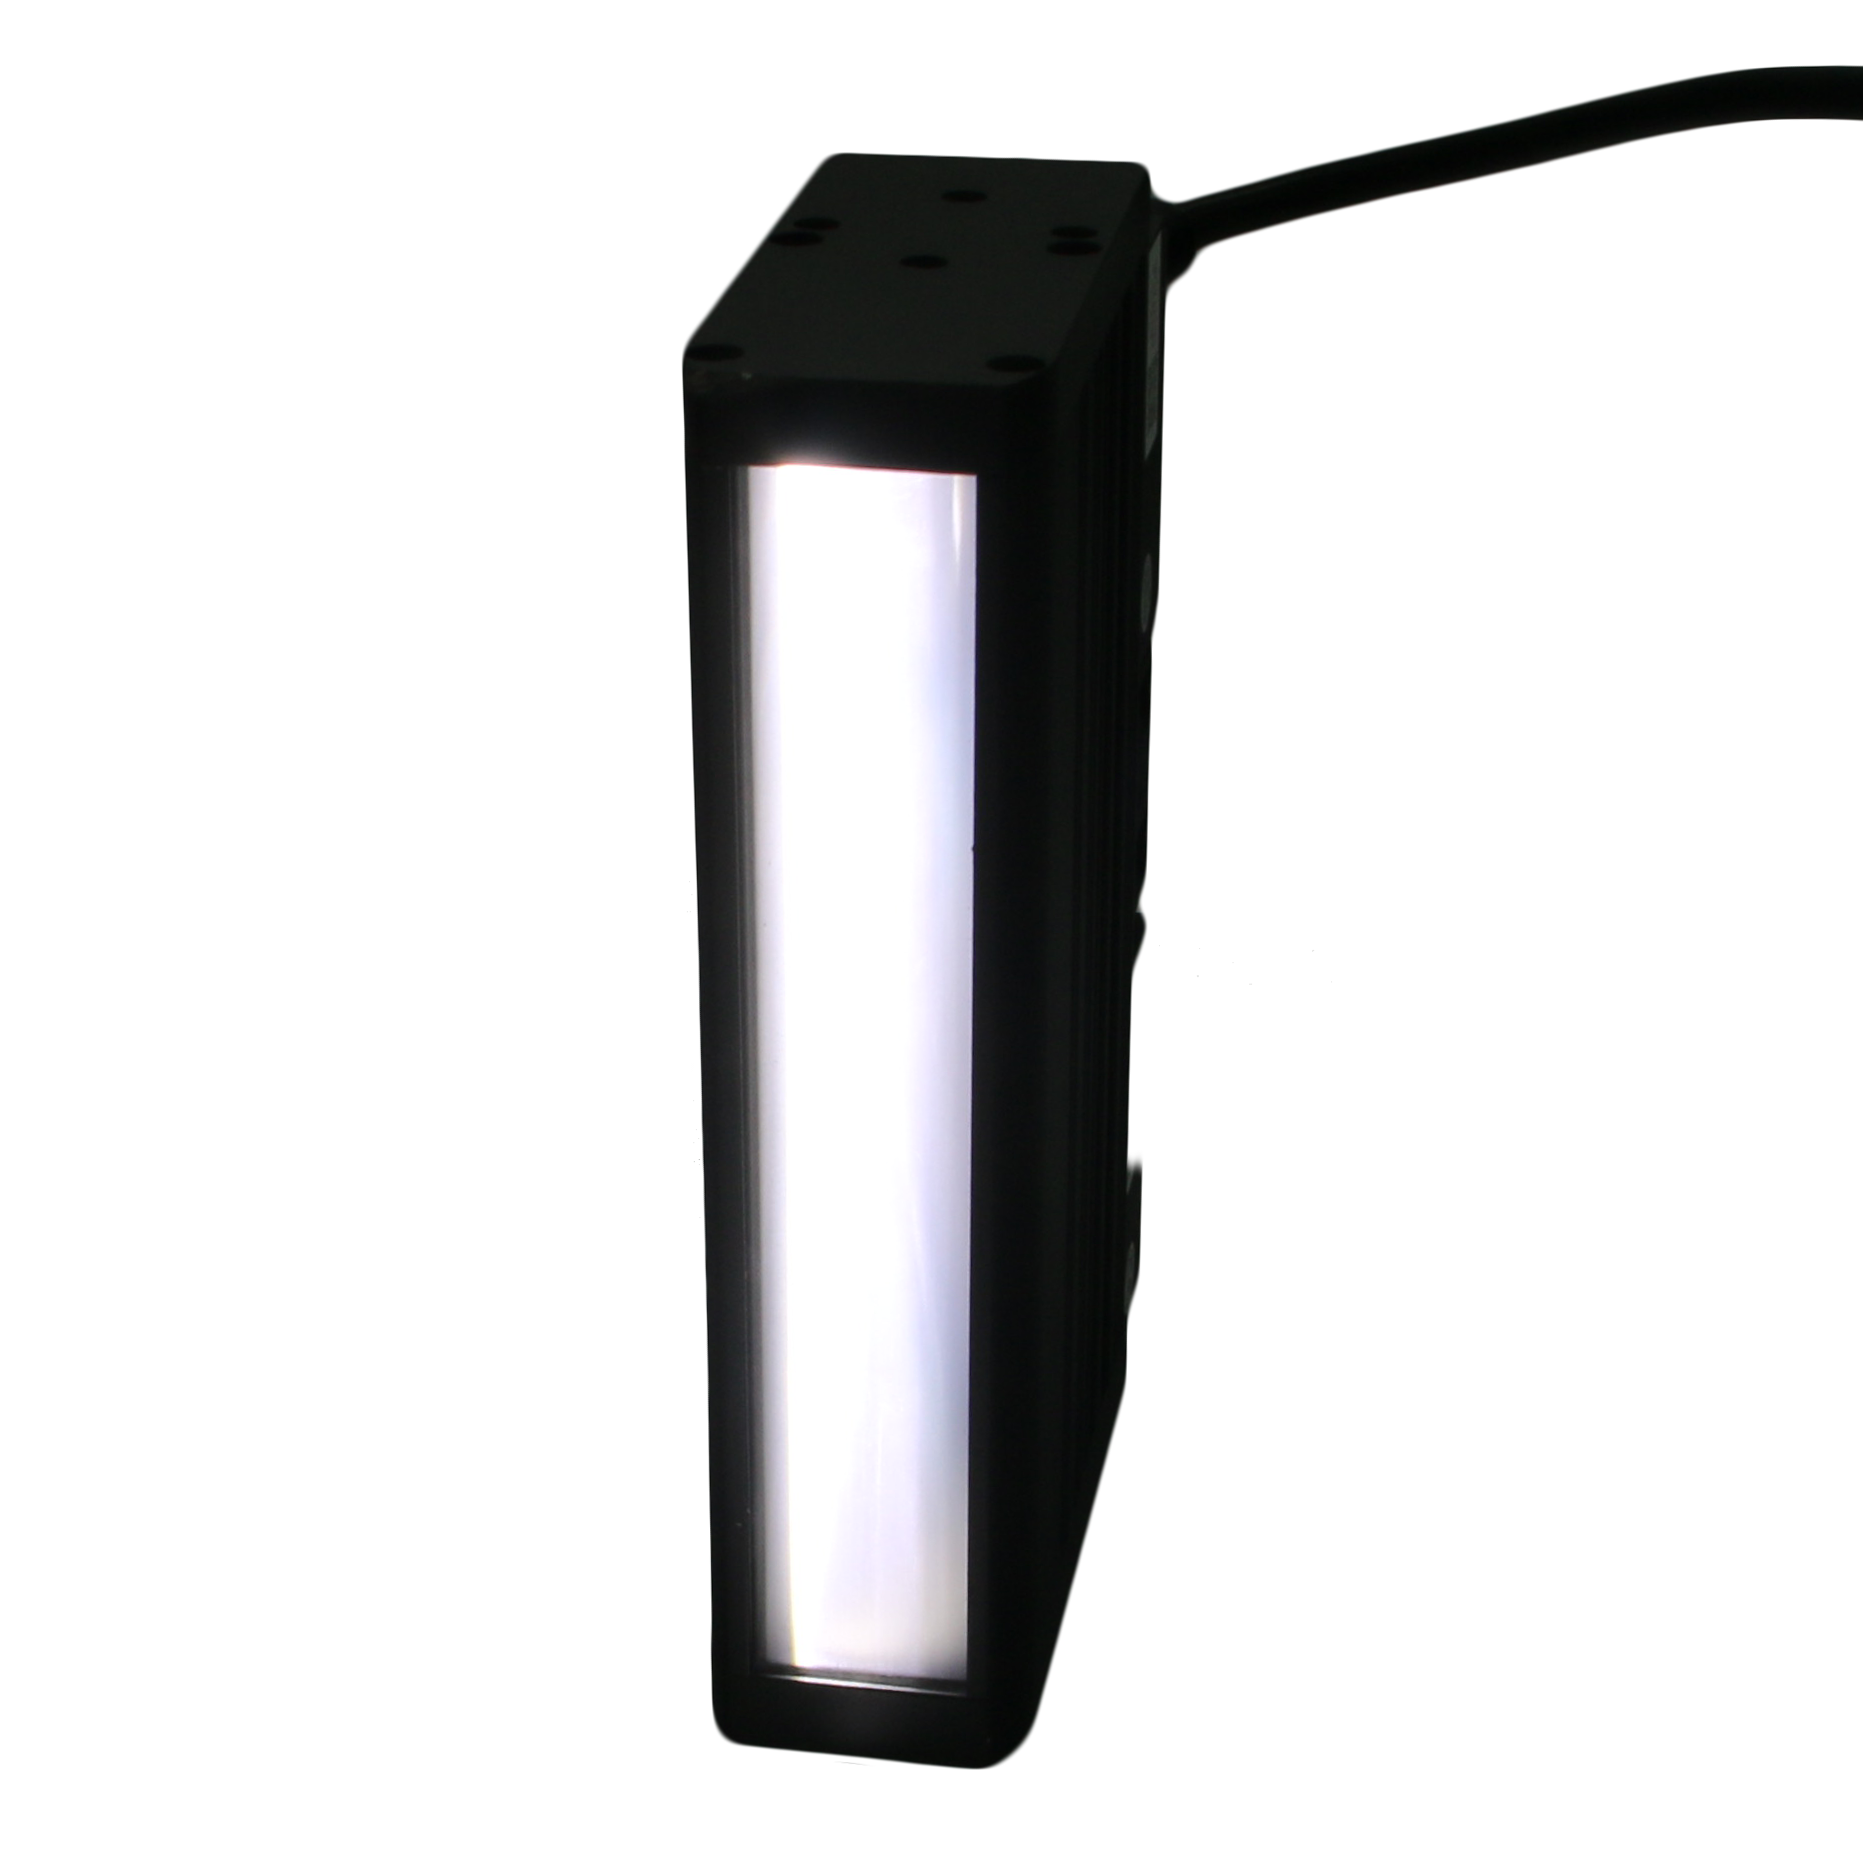 FG Professional LED Light LED Vision Light LED Linear Light 24V for Industrial Camara